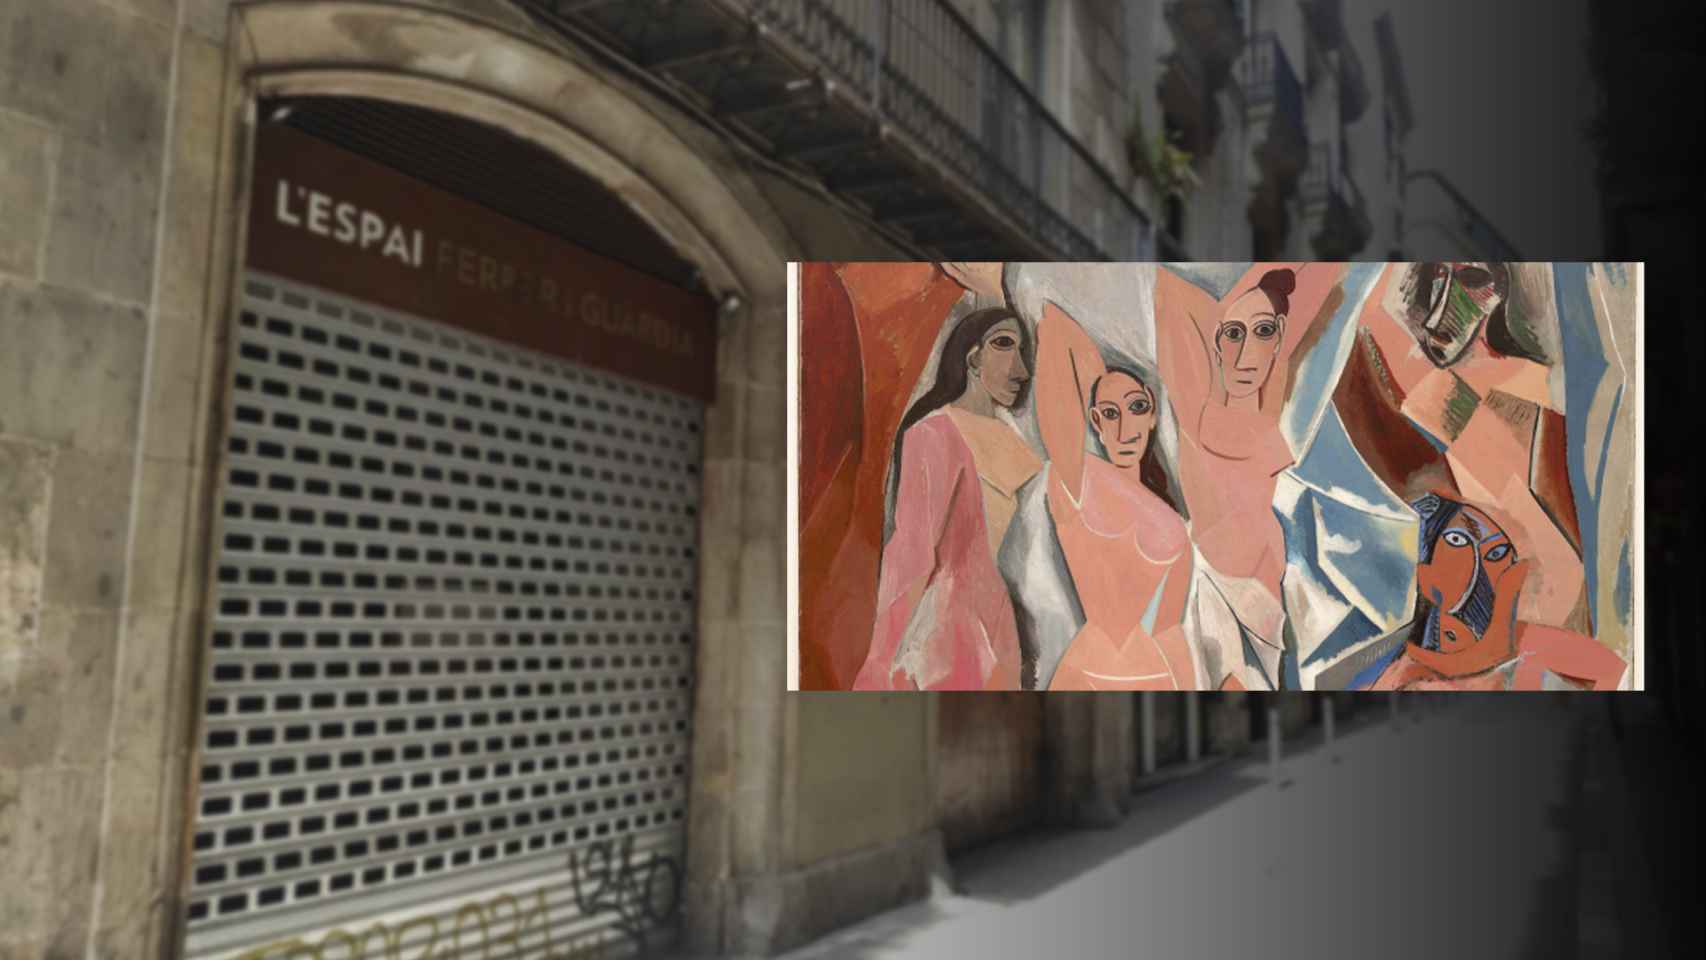 El número 44 de la calle Avinyó y el cuadro cubista 'Las señoritas de Avignon' de Picasso